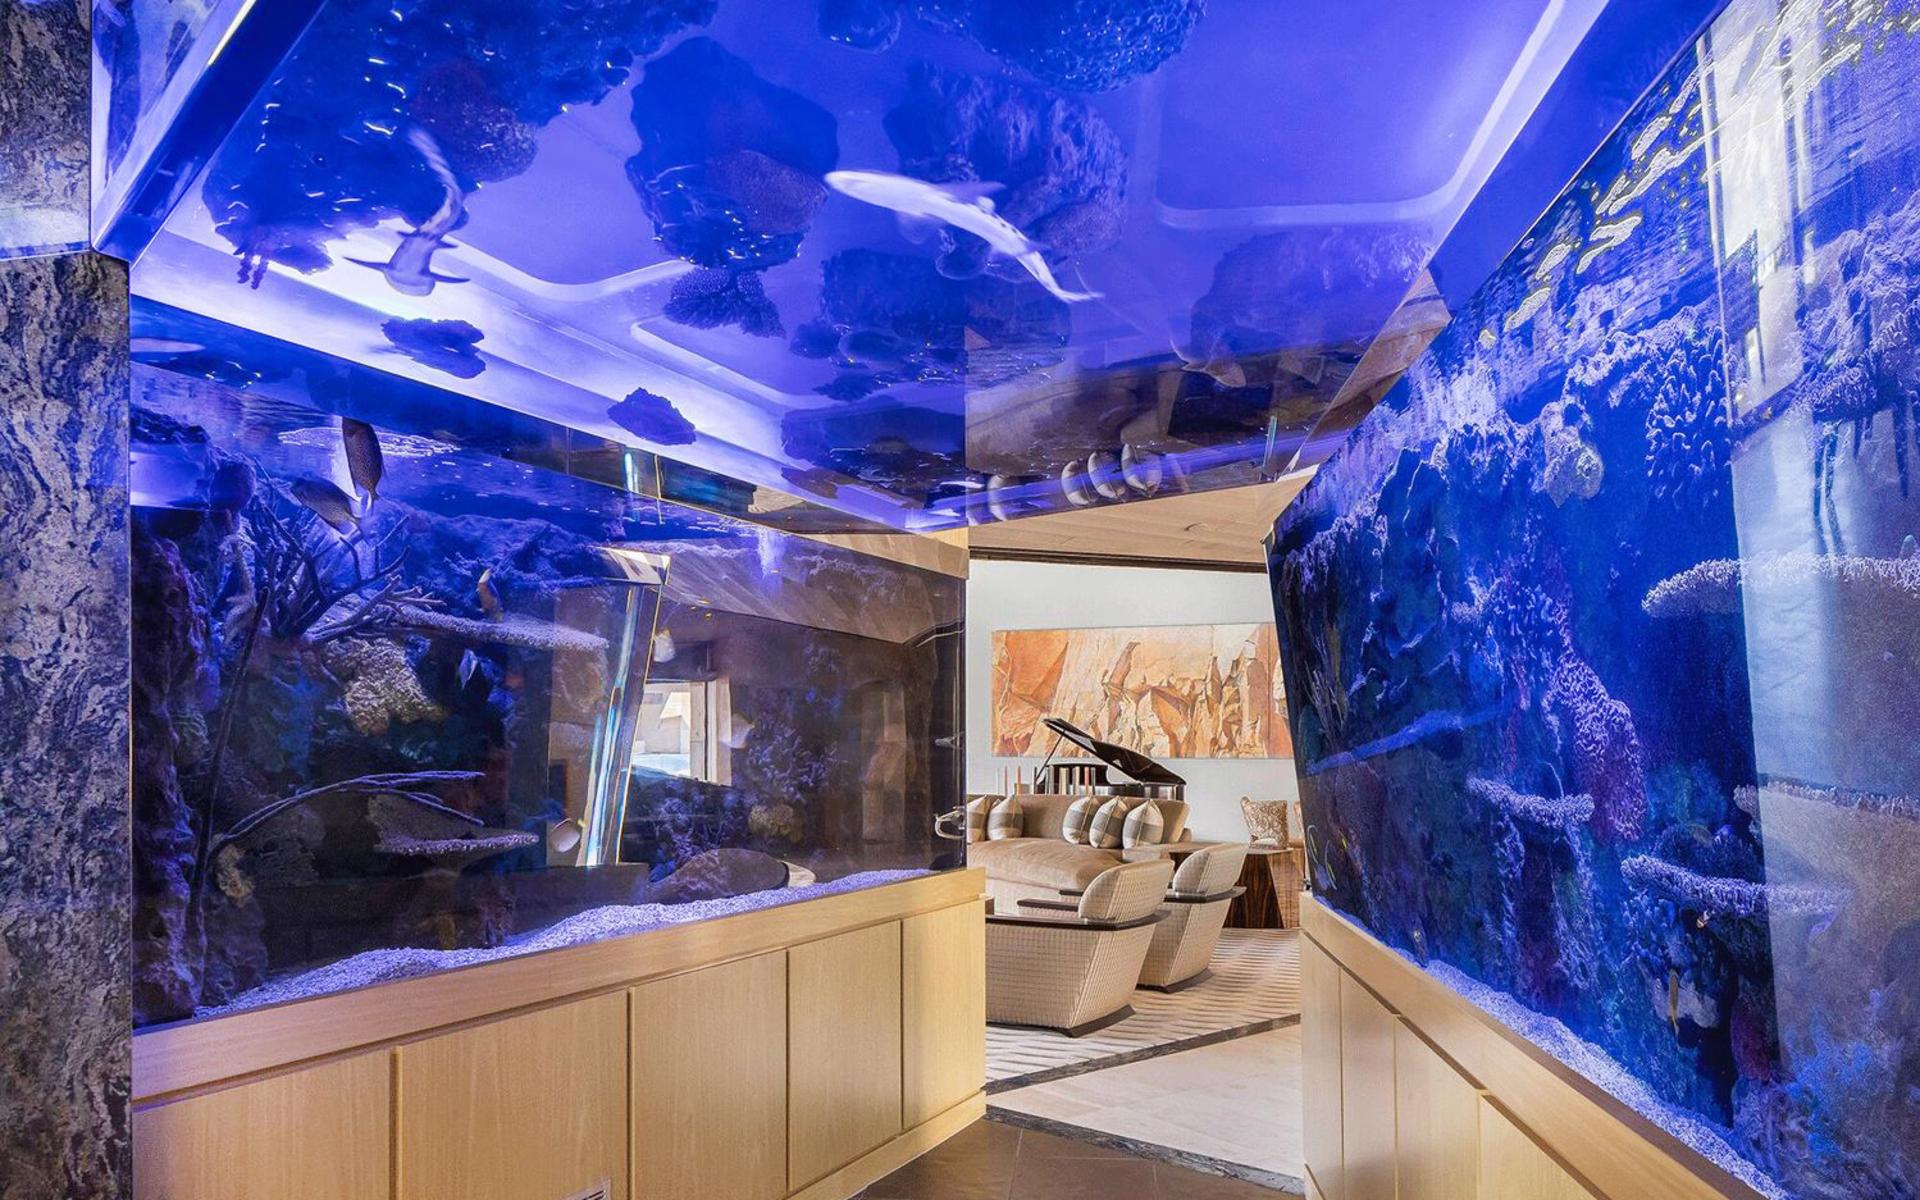 Det måste vara ovanligt med en akvarietunnel med hajar och exotiska fiskar i ett privat hus.